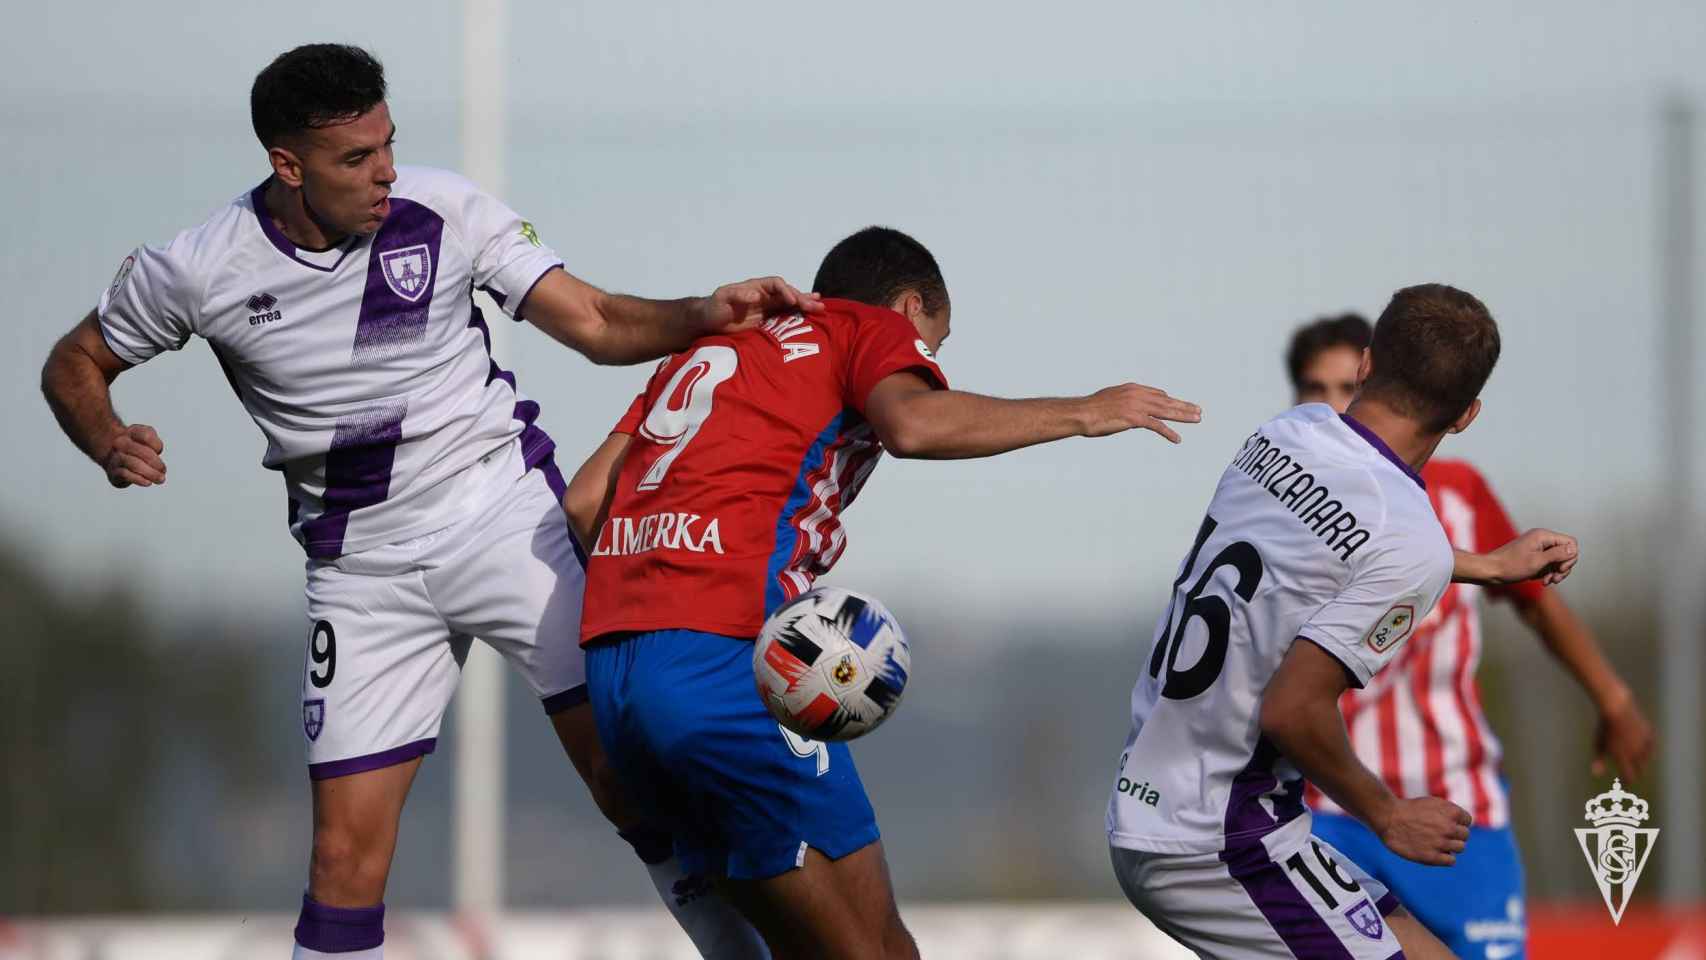 El Numancia, jugando su partido contra el Sporting de Gijón B